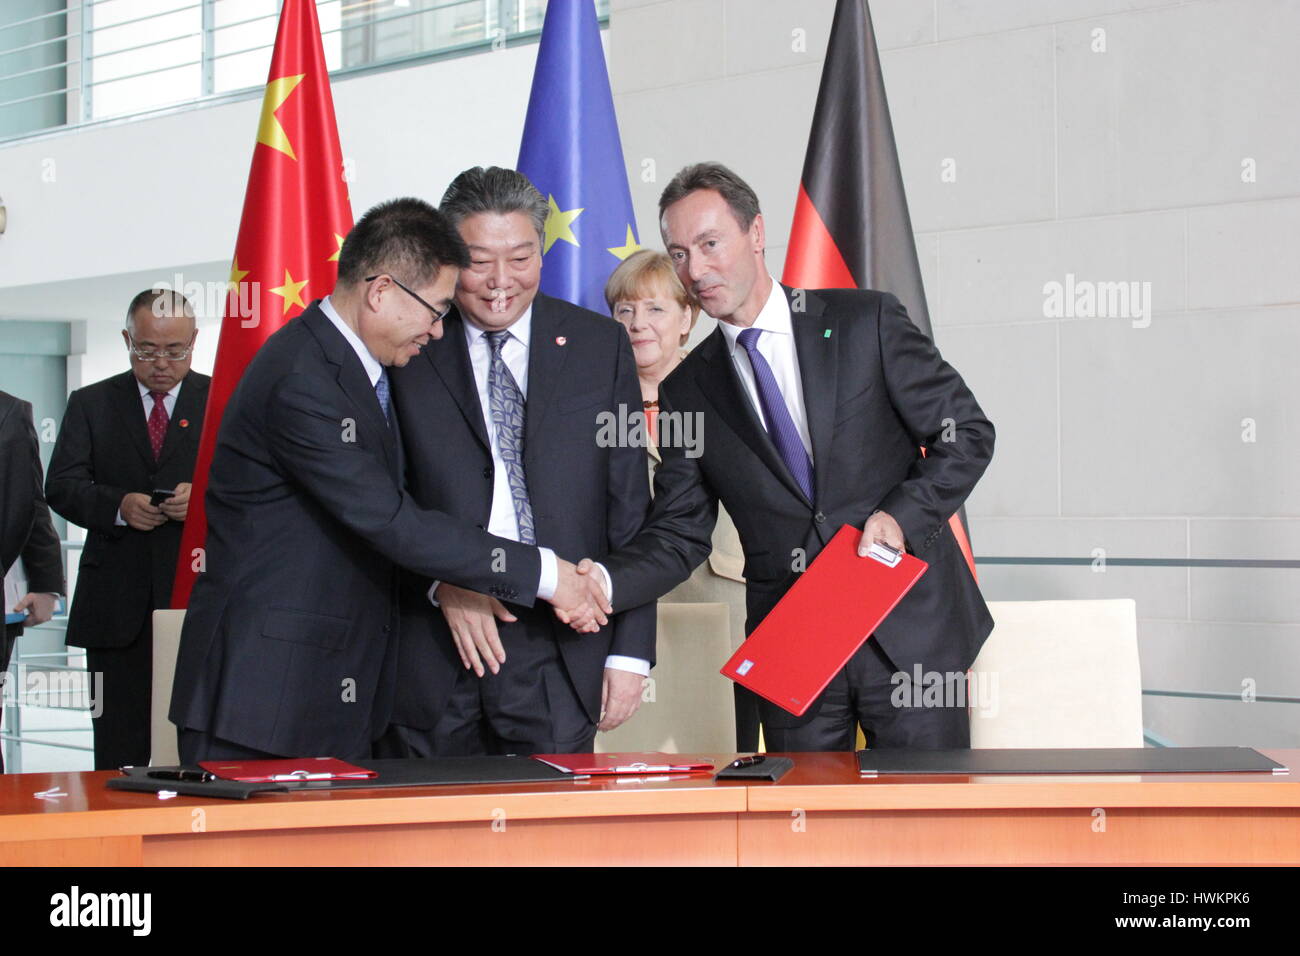 Berlin, Allemagne, October 10th, 2014 : délégation du gouvernement chinois se réunit avec délégation allemande d'accords économiques Banque D'Images